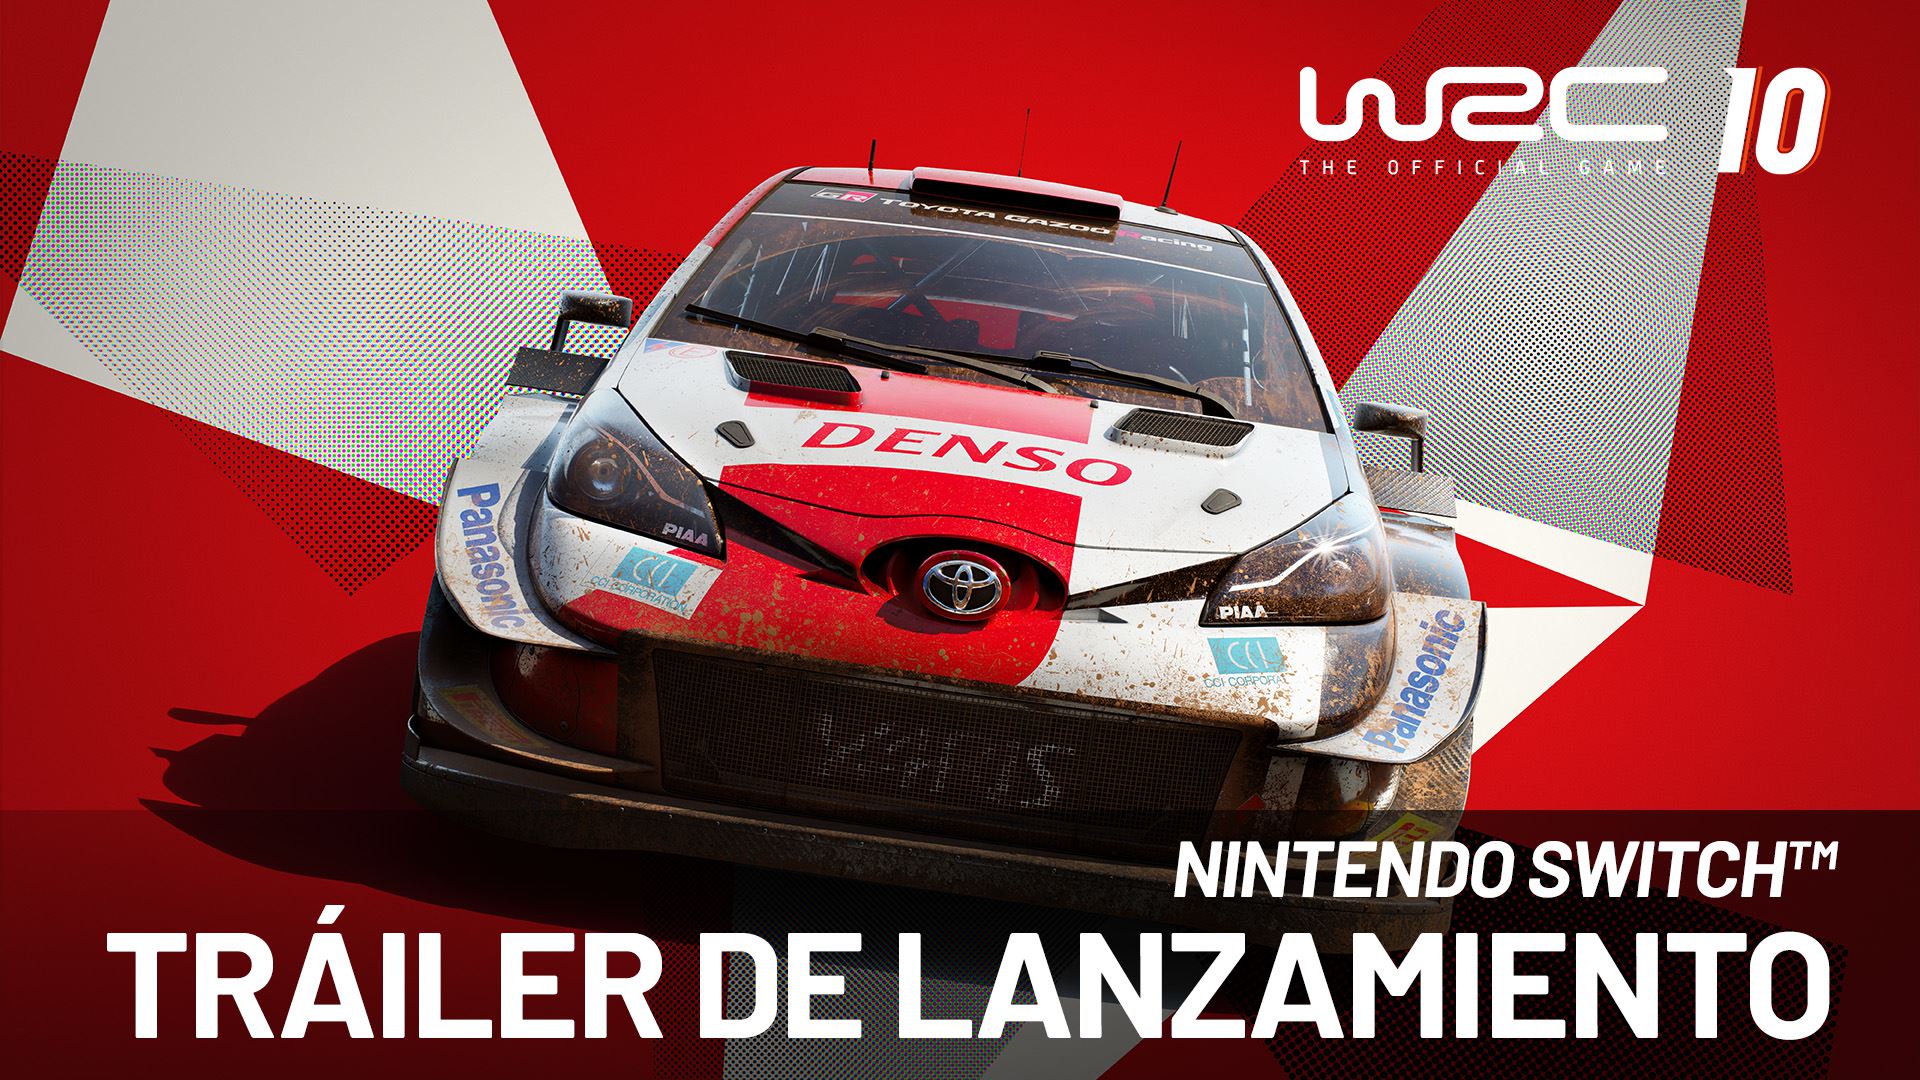 Lee más sobre el artículo WRC 10 ya disponible en Nintendo Switch